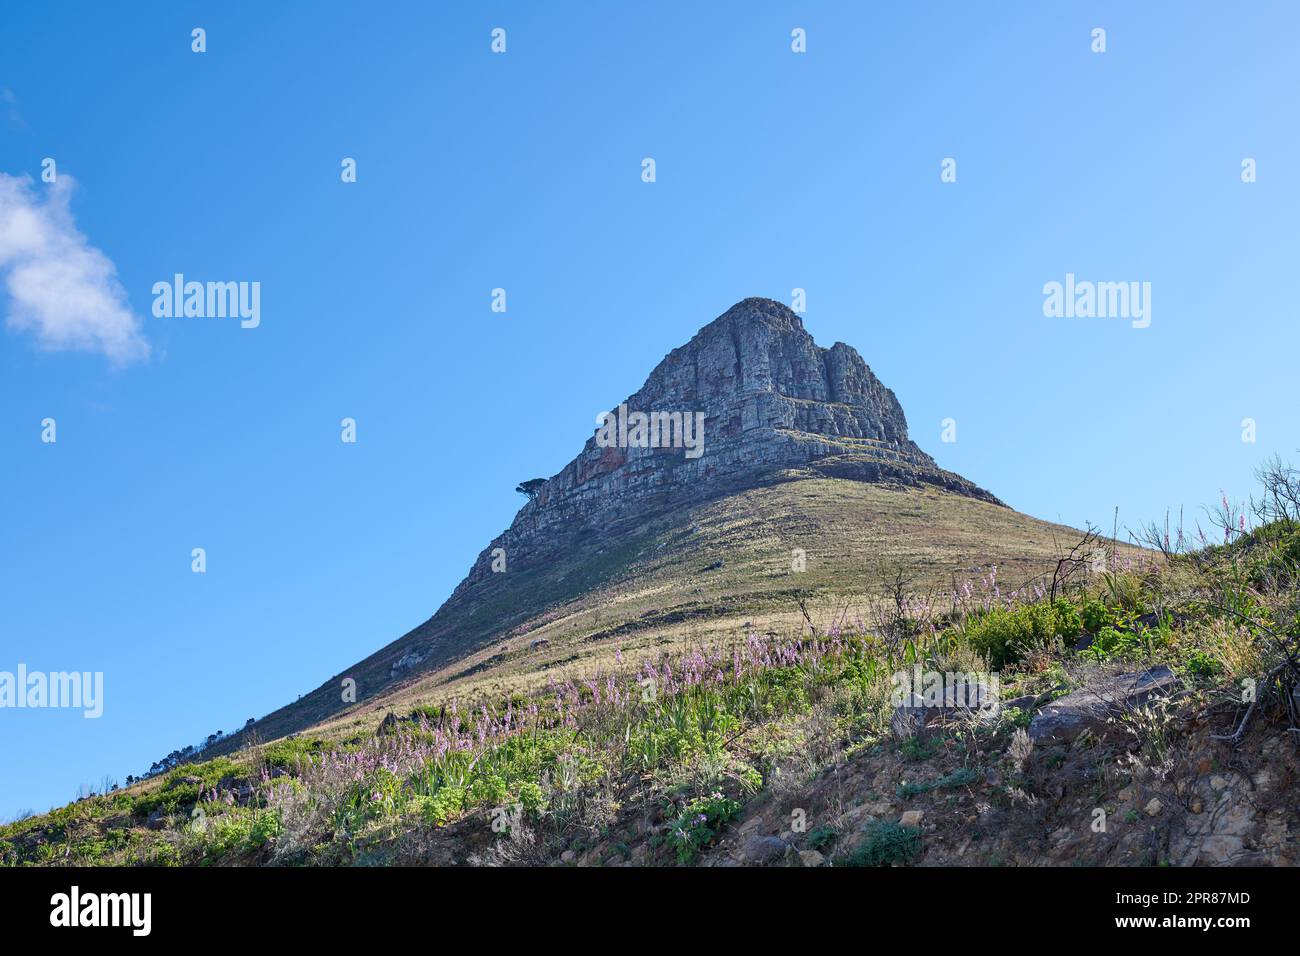 Paysage d'une montagne contre un ciel bleu clair avec espace de copie. Pic de montagne avec un pâturage vert luxuriant et des fleurs florissantes dans un environnement naturel. Lieu touristique populaire en Afrique du Sud Banque D'Images